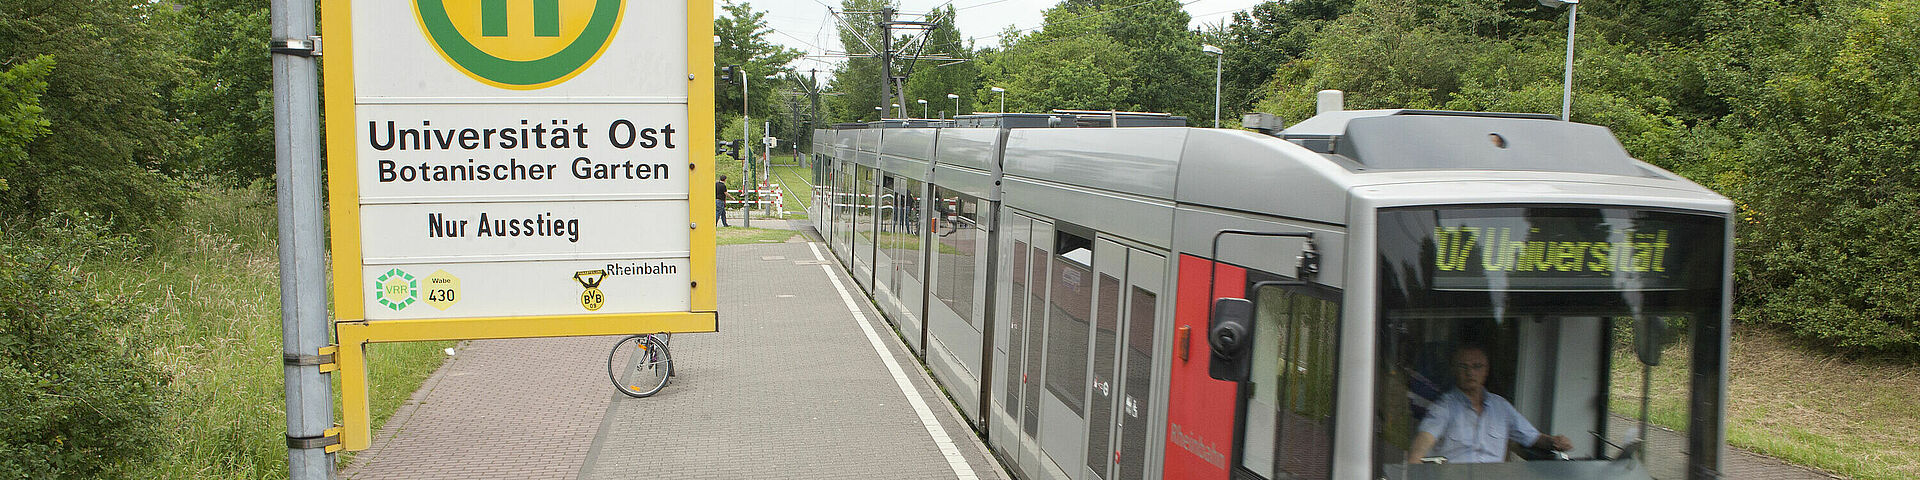 Universität Düsseldorf: Öffentliche Verkehrsmittel